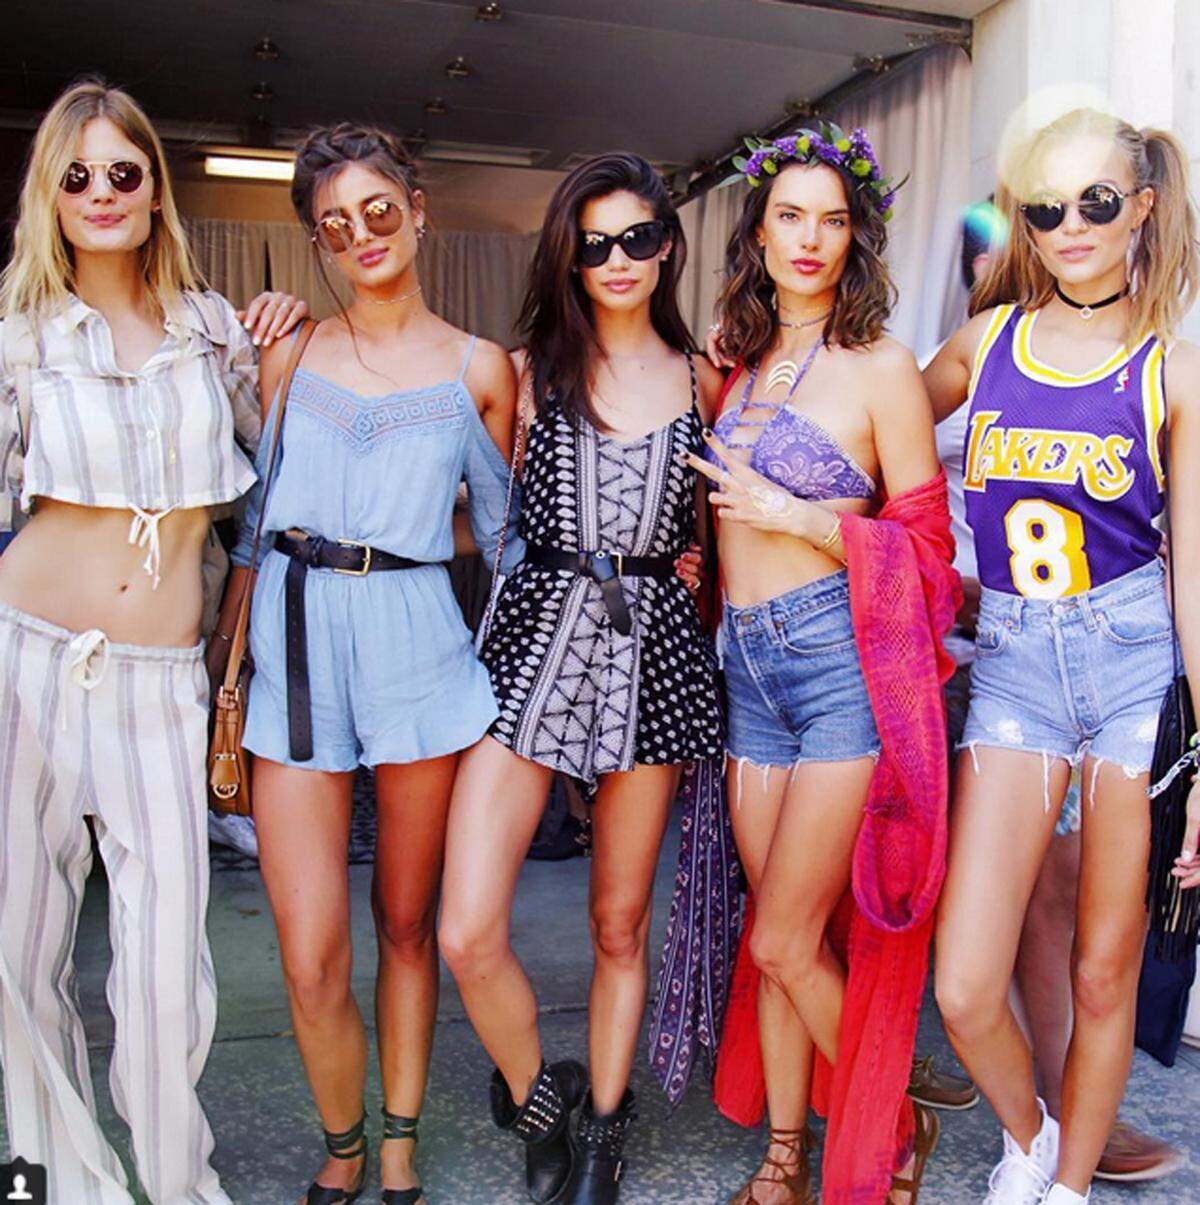 Der Freizeit-Laufsteg in Indio, Kalifornien. Zur Revolve-Sause des Coachella Festivals heuer kamen neben Alessandra Ambrosio auch viele ihrer Victoria's Secret Kolleginnen.